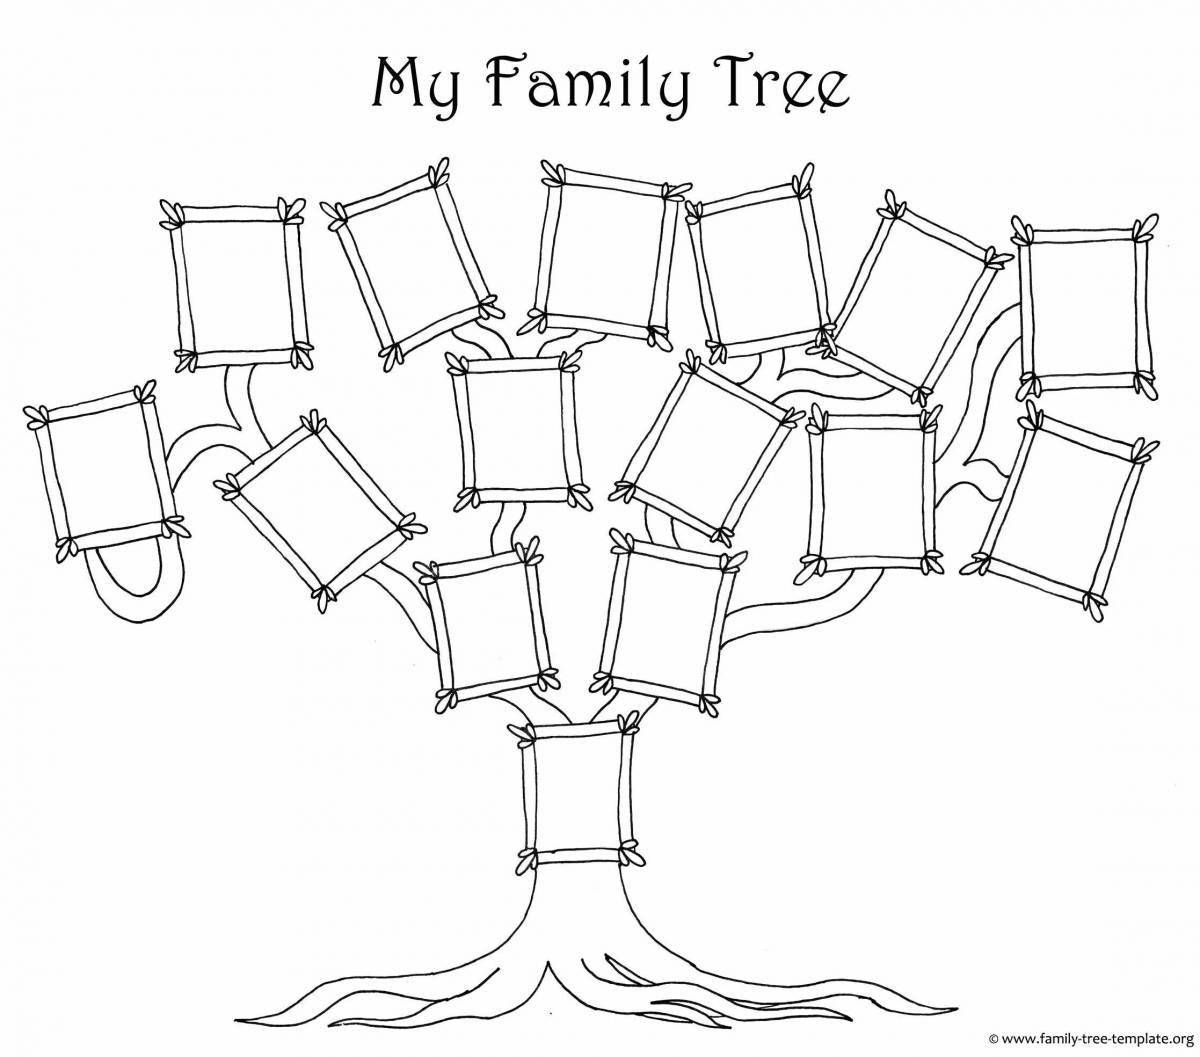 Family tree #3